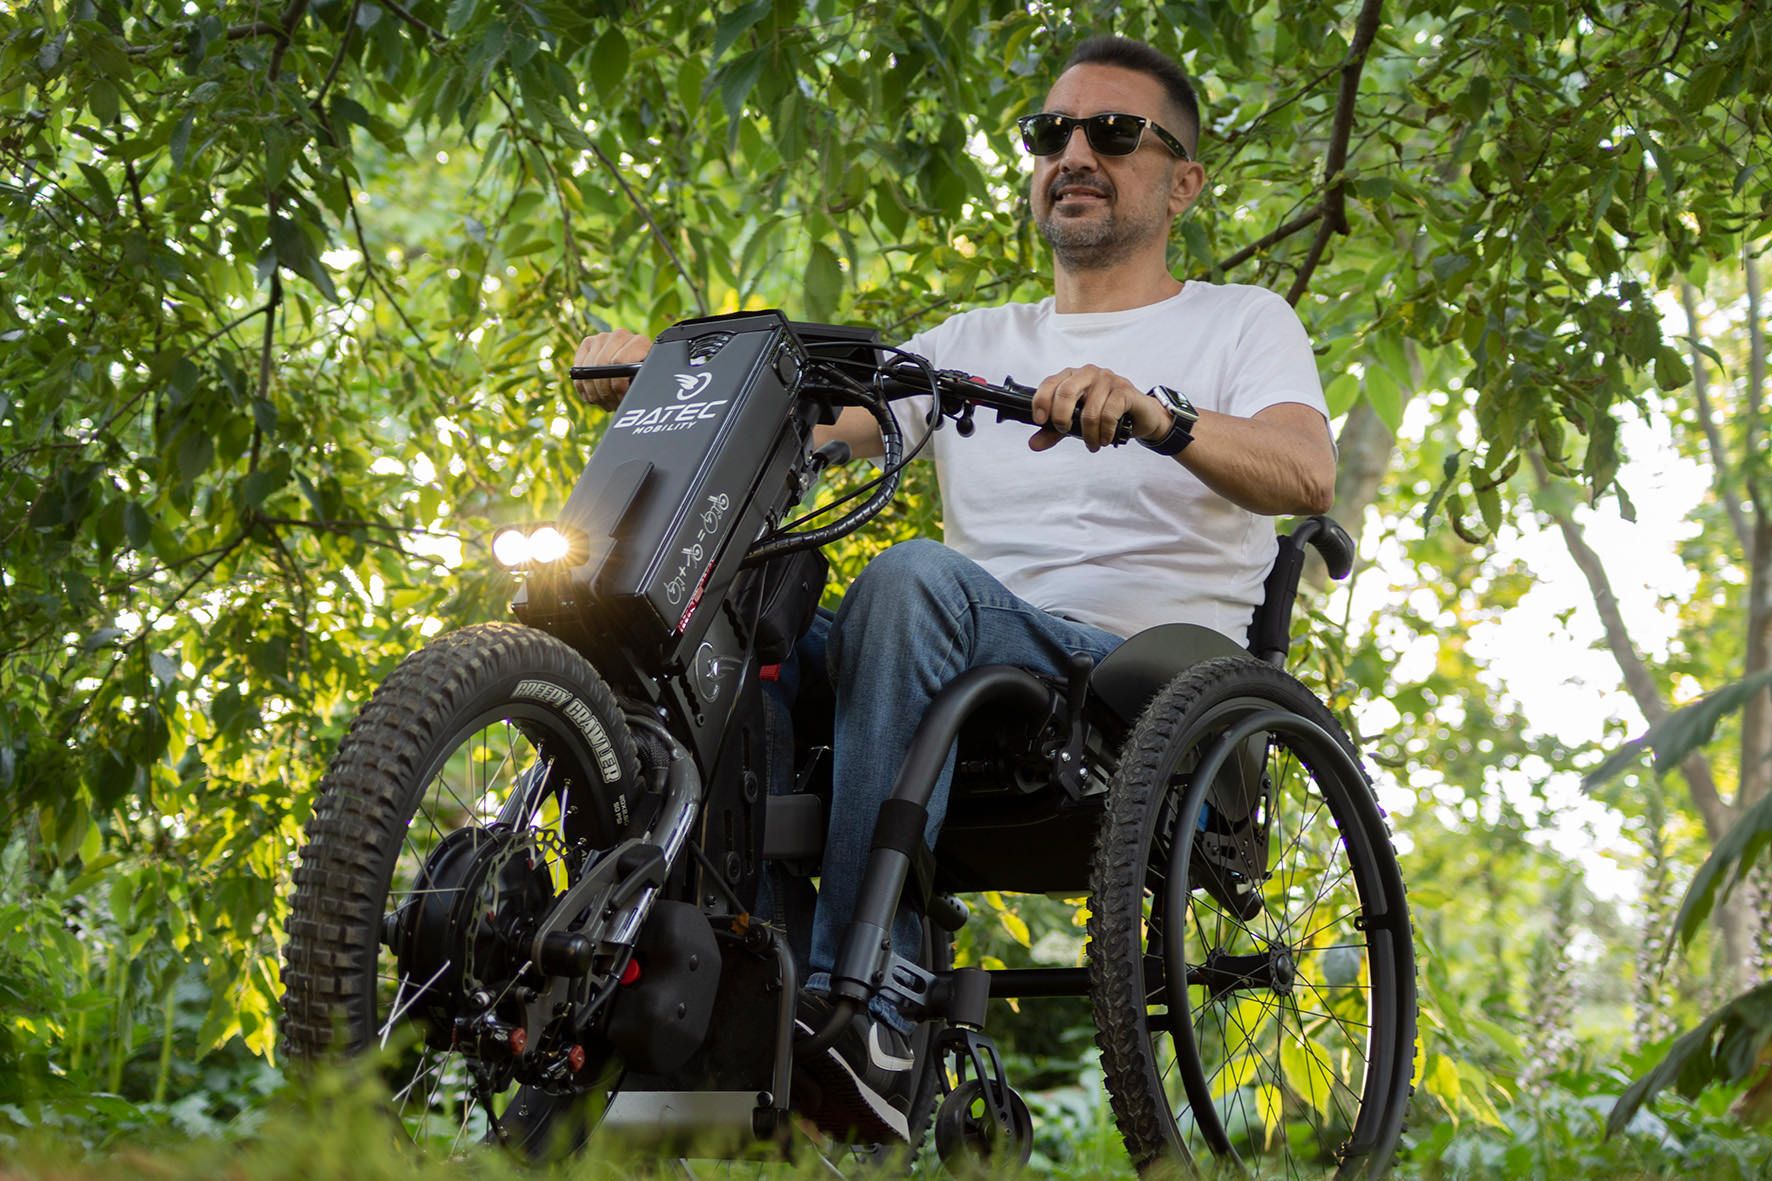 Das Bild zeigt einen Mann im Rollstuhl, der mit Sonnenbrille im Wald unterwegs ist. Er nutzt hierzu ein Rollstuhl-Zuggerät im Offroad-Look.